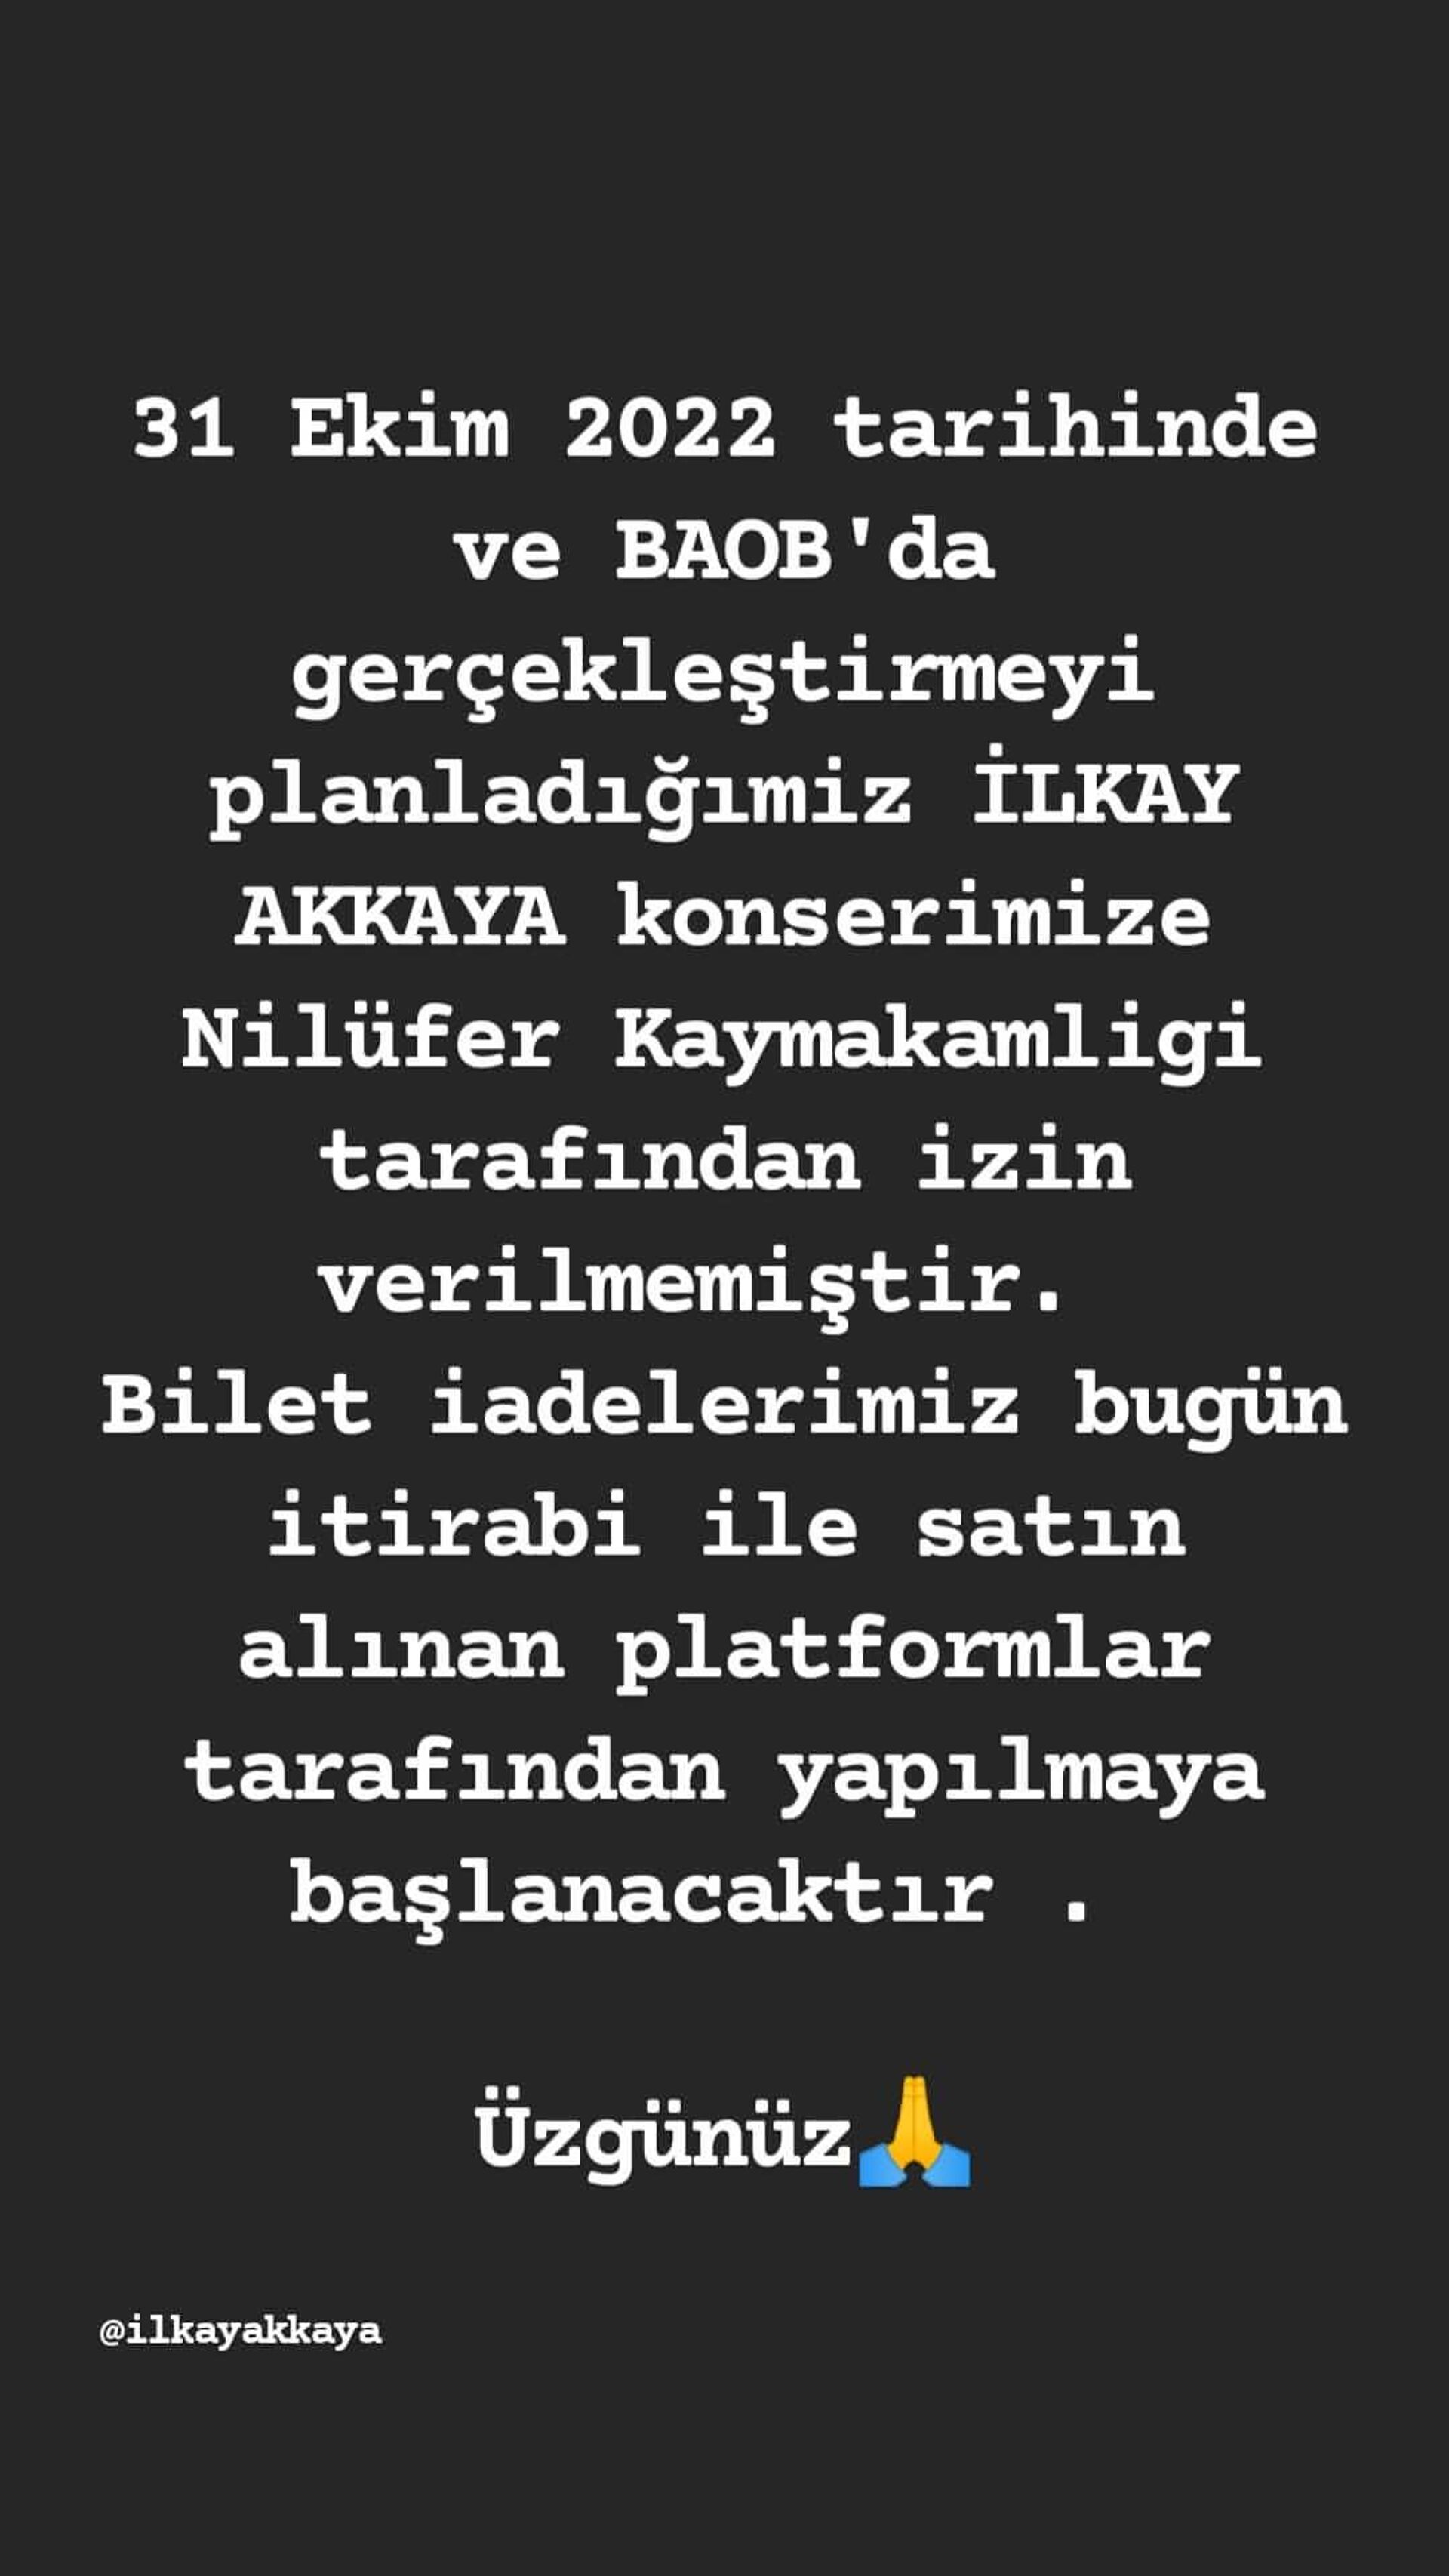 İlkay Akkaya’nın konseri Nilüfer Kaymakamlığı tarafından iptal edildi - Sputnik Türkiye, 1920, 29.10.2022